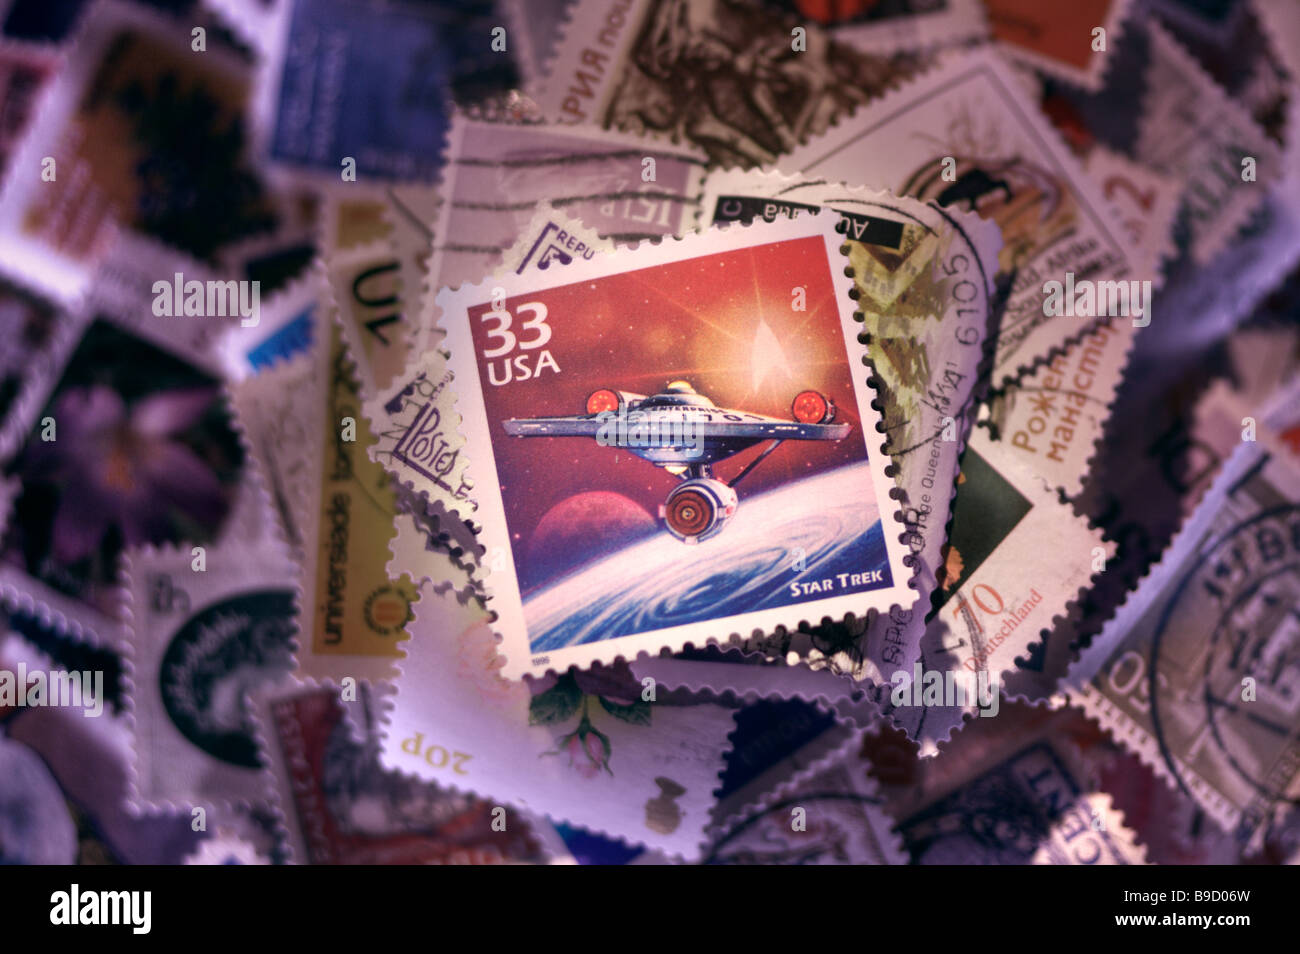 Star trek stamp Stock Photo